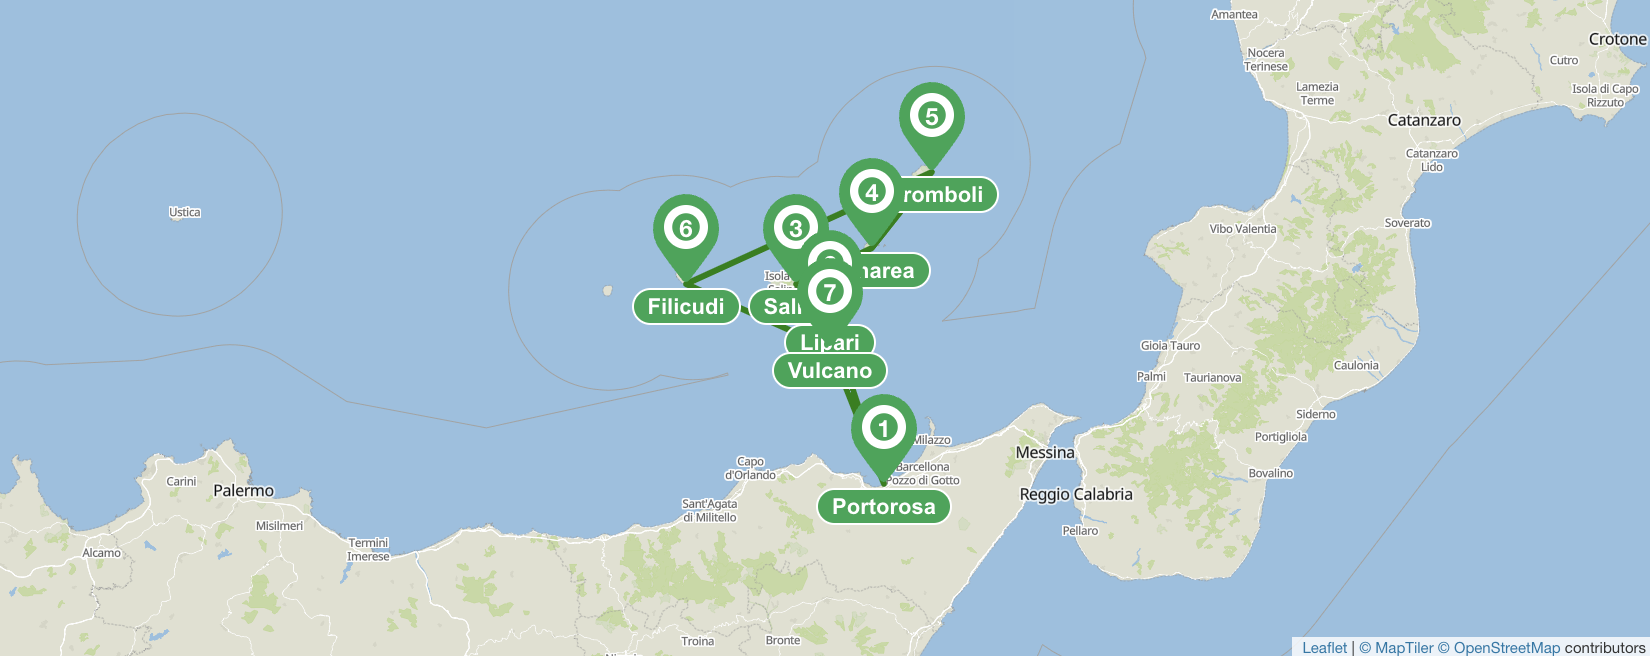 Les îles Lipari - itinéraire de navigation de 7 jours